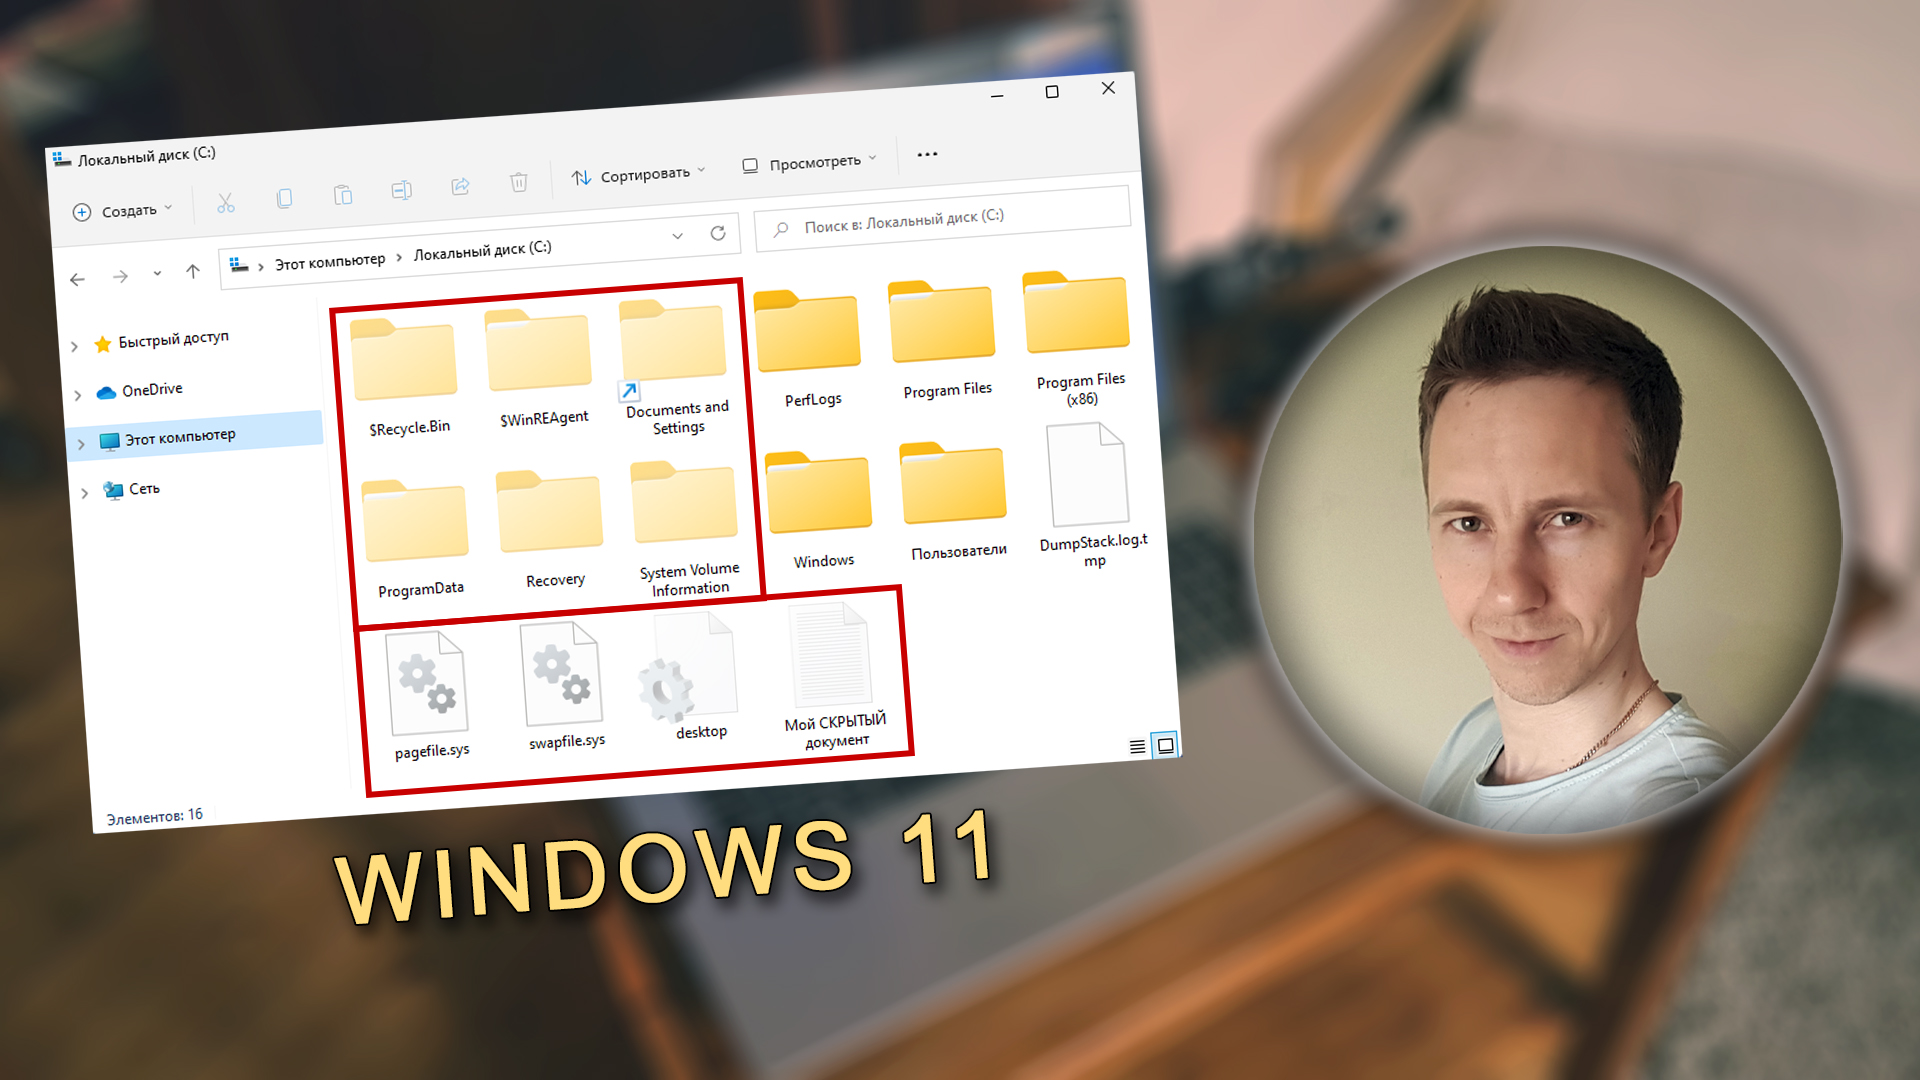 Лицо Владимира Белева с кружке, размытый фон, окно проводника Windows 11 со скрытыми файлами и папками.